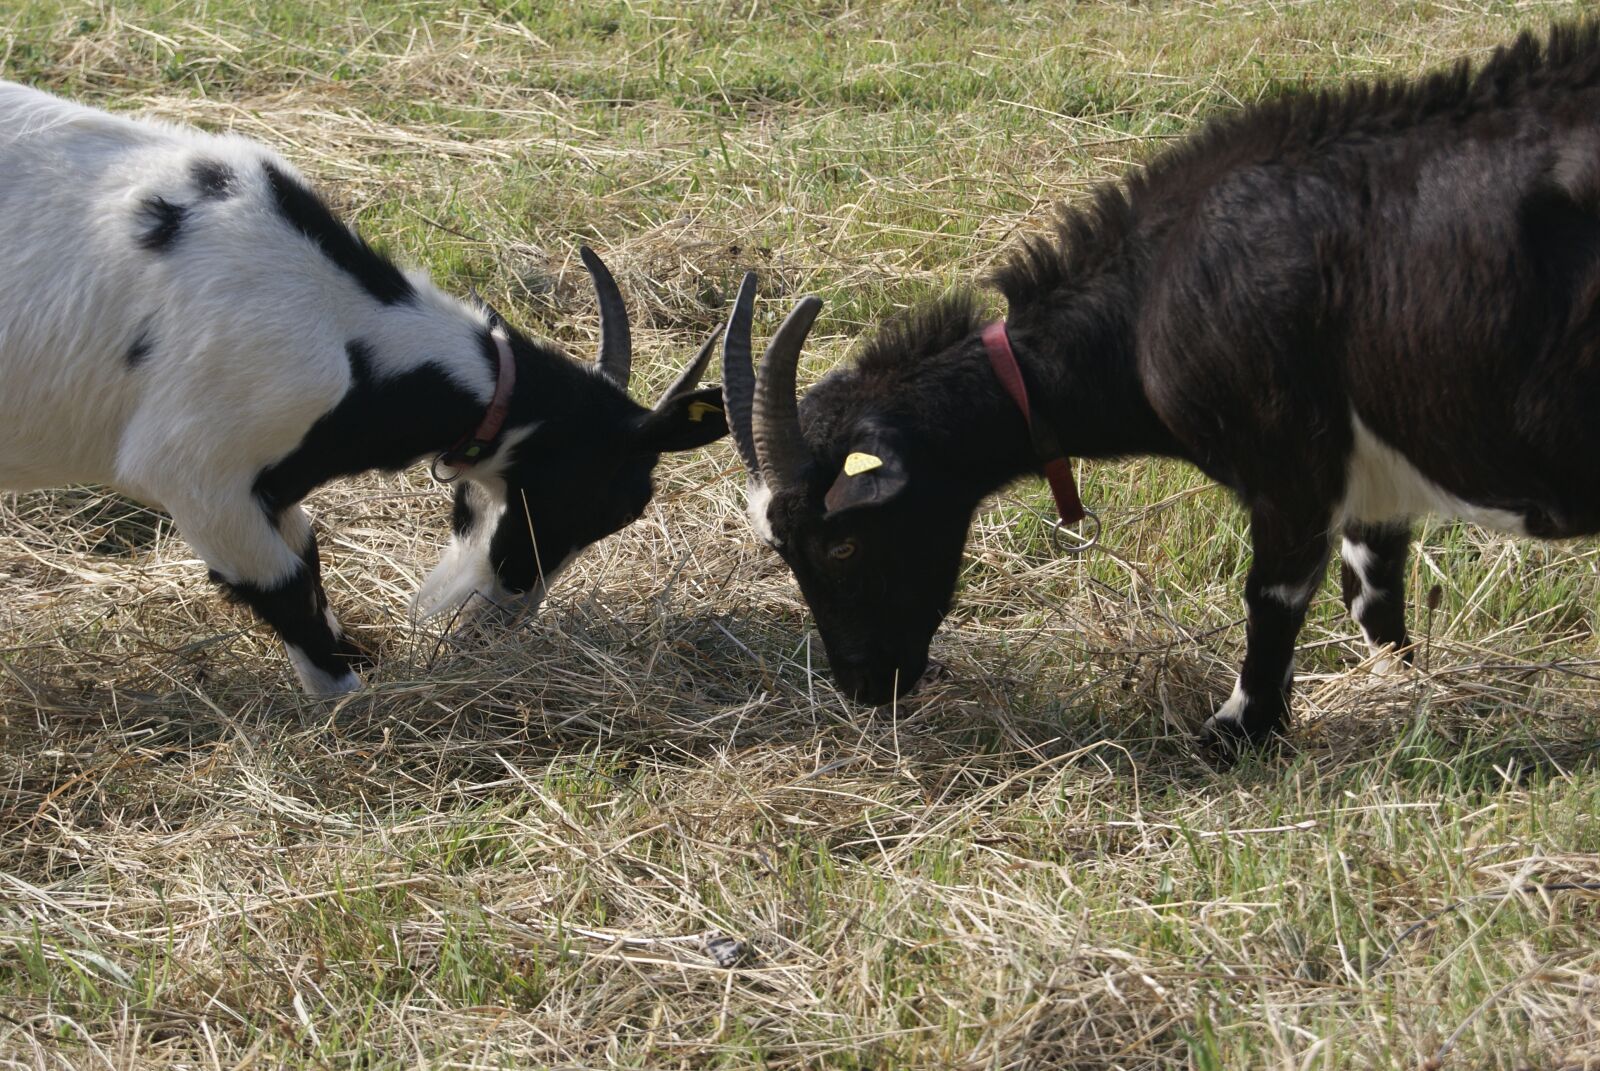 Sony Alpha DSLR-A330 sample photo. Goats, horns, animal photography